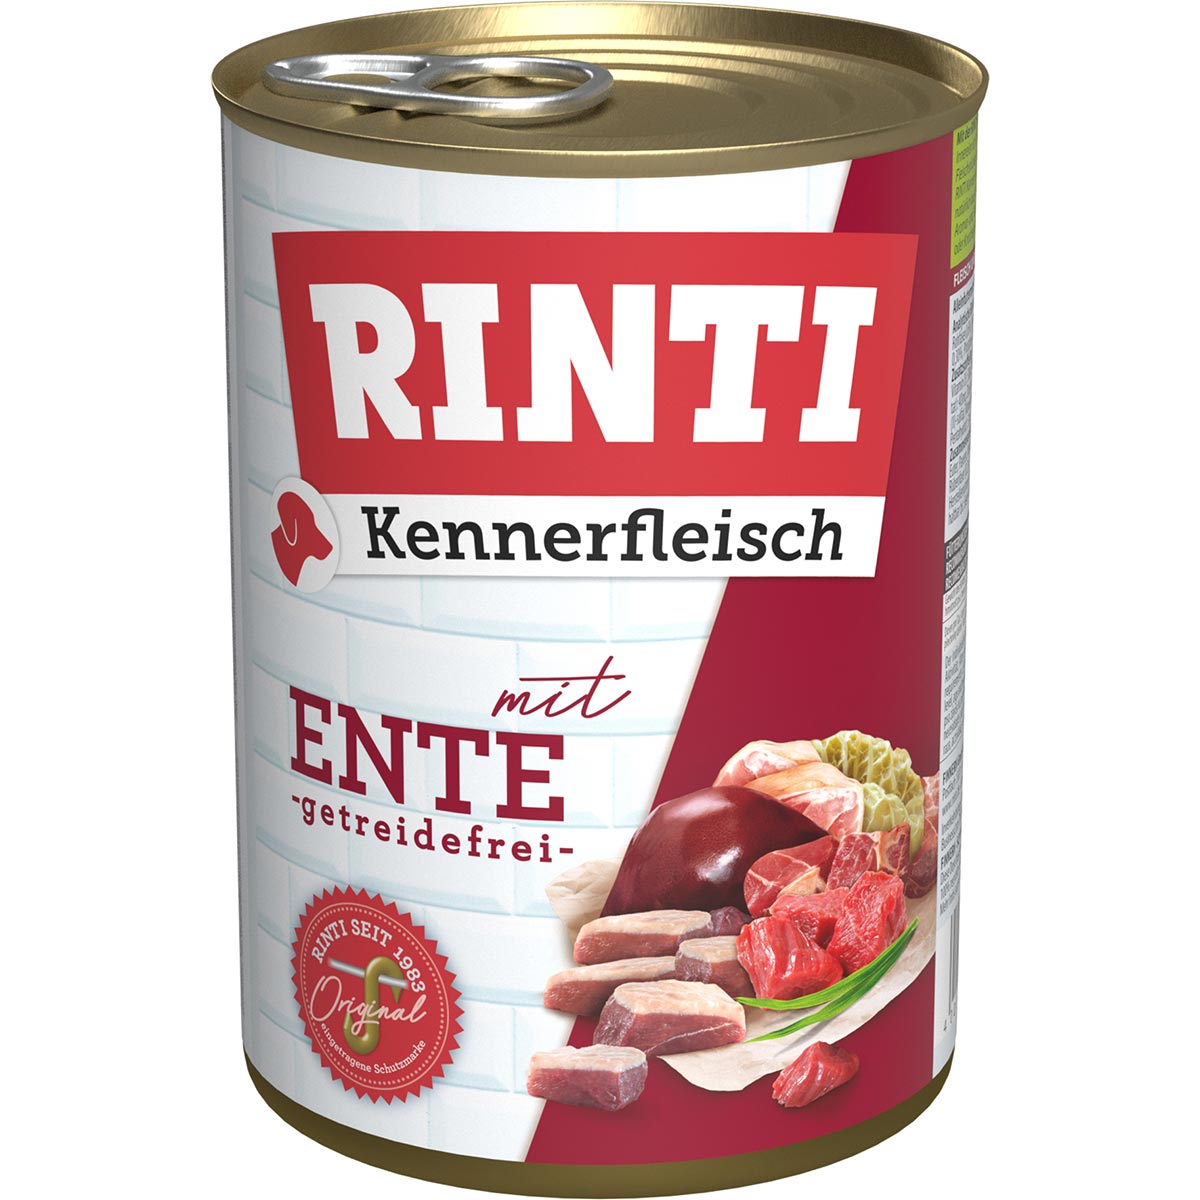 Rinti Kennerfleisch mit Ente 24x400g von Rinti